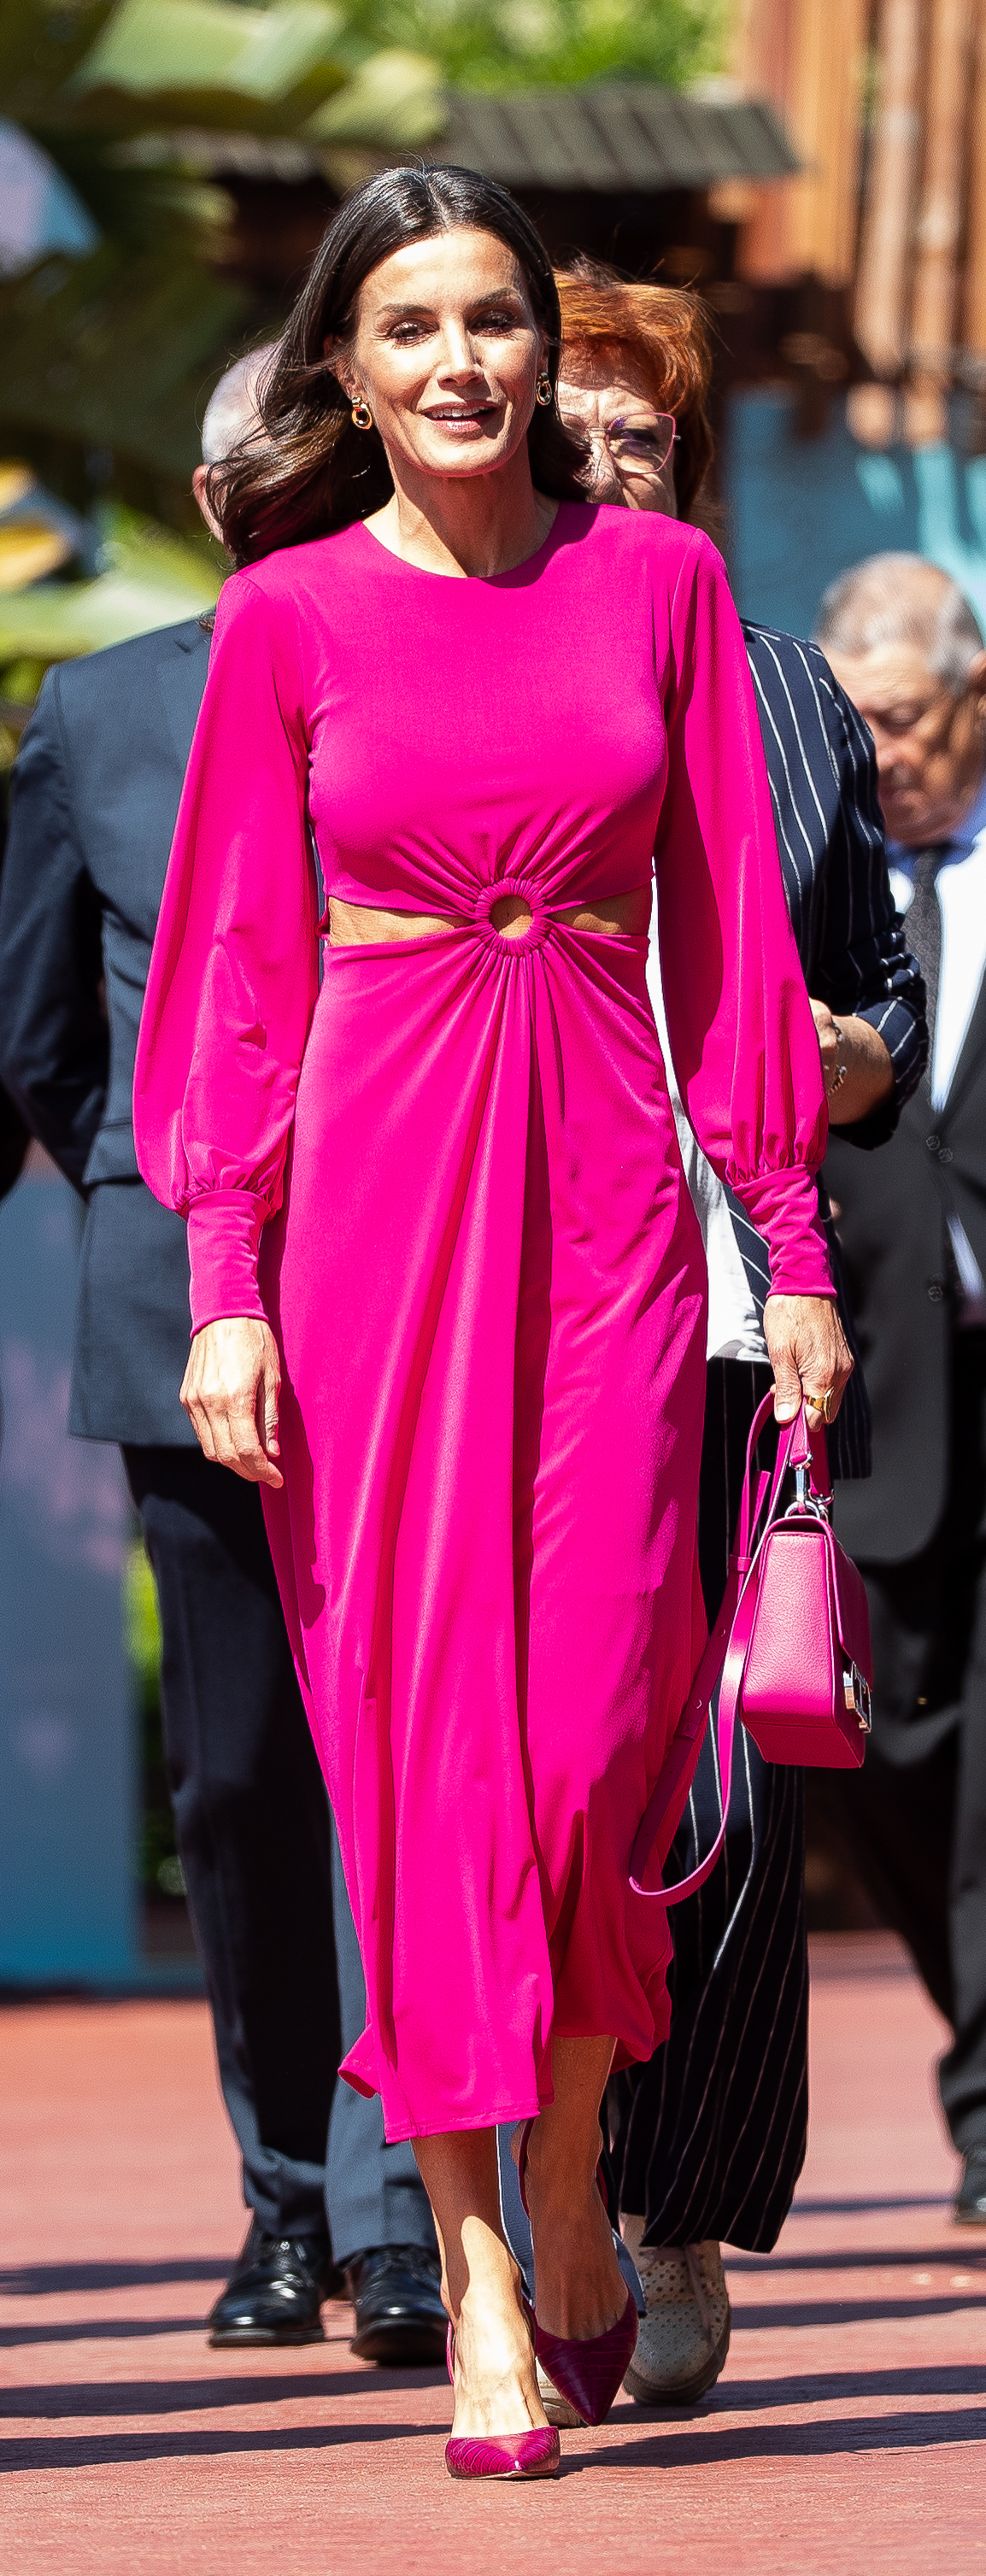 El arriesgado vestido cut-out de la reina Letizia.